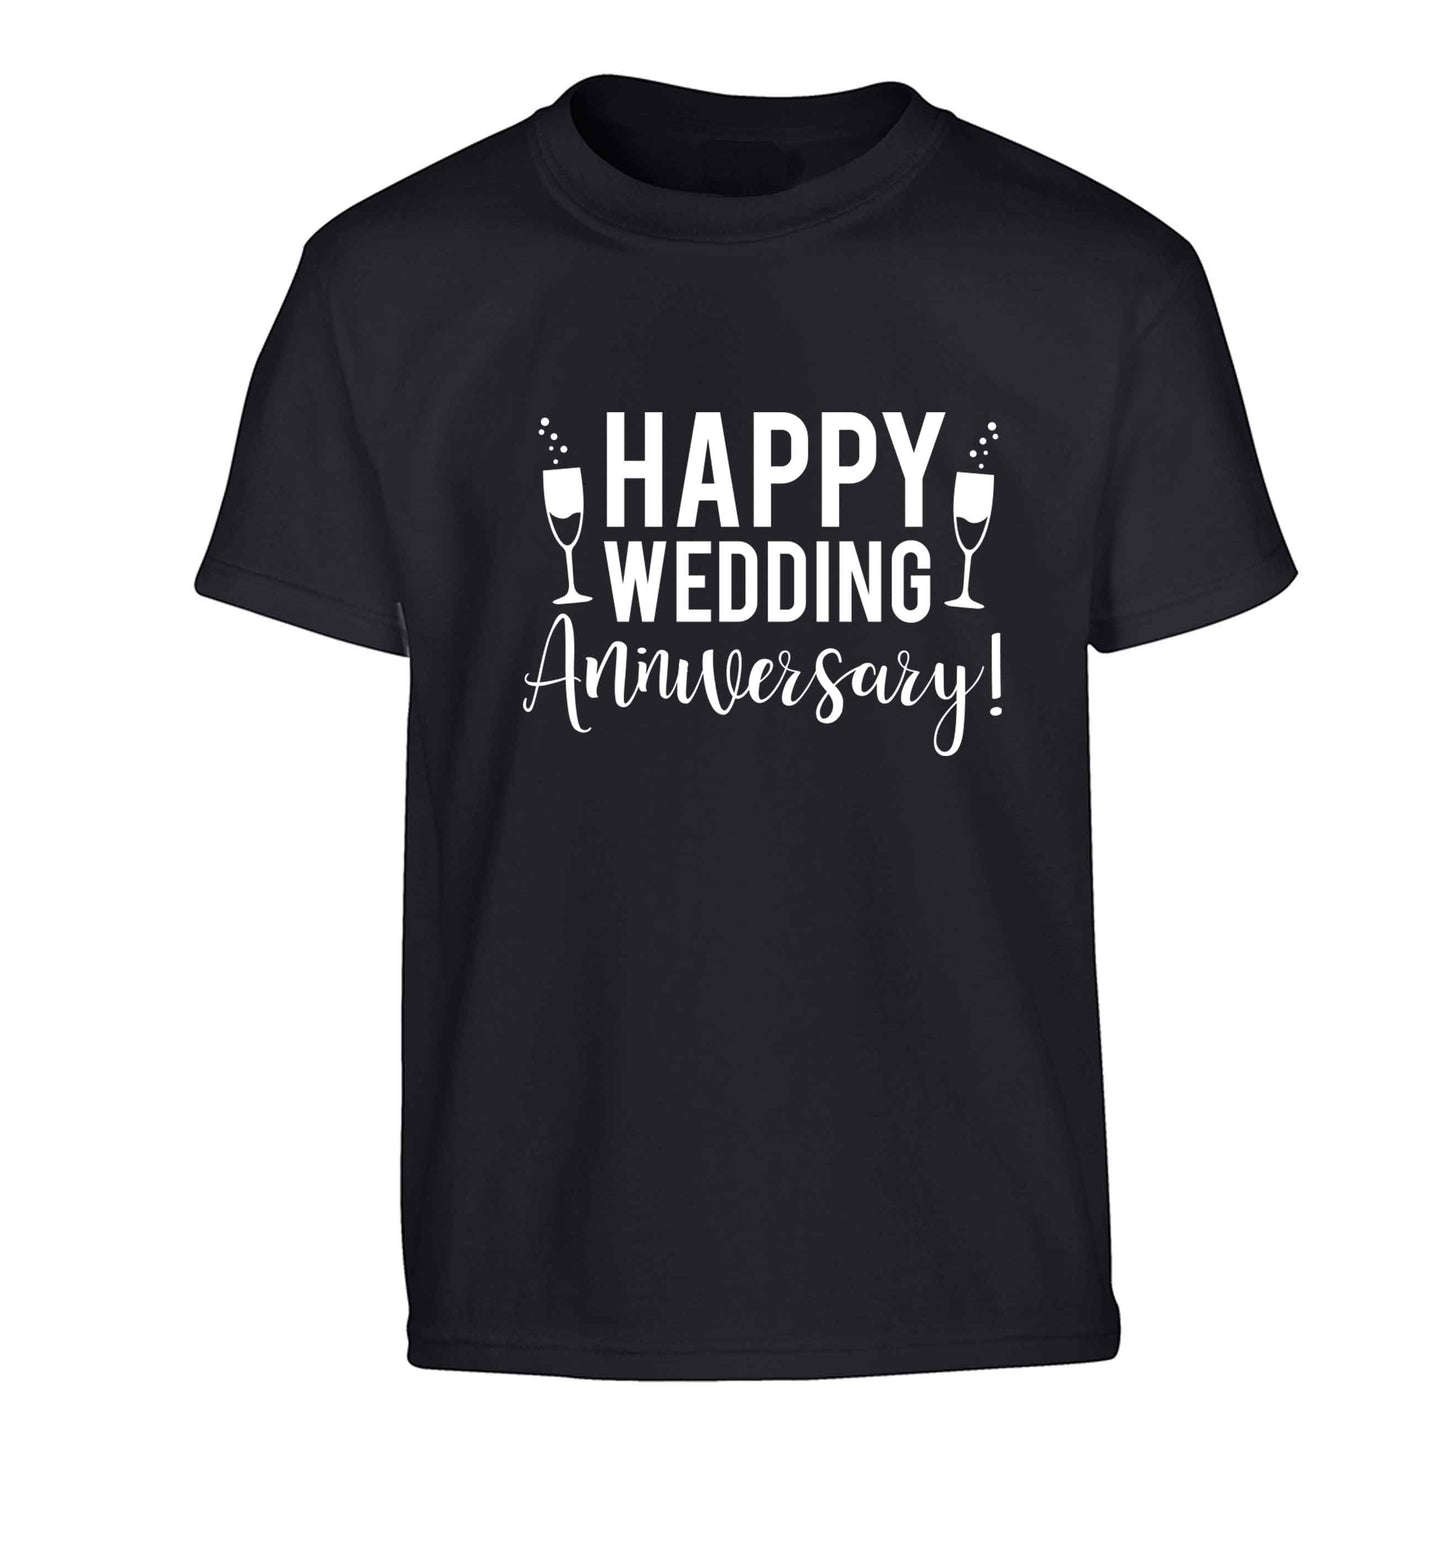 Happy wedding anniversary! Children's black Tshirt 12-13 Years